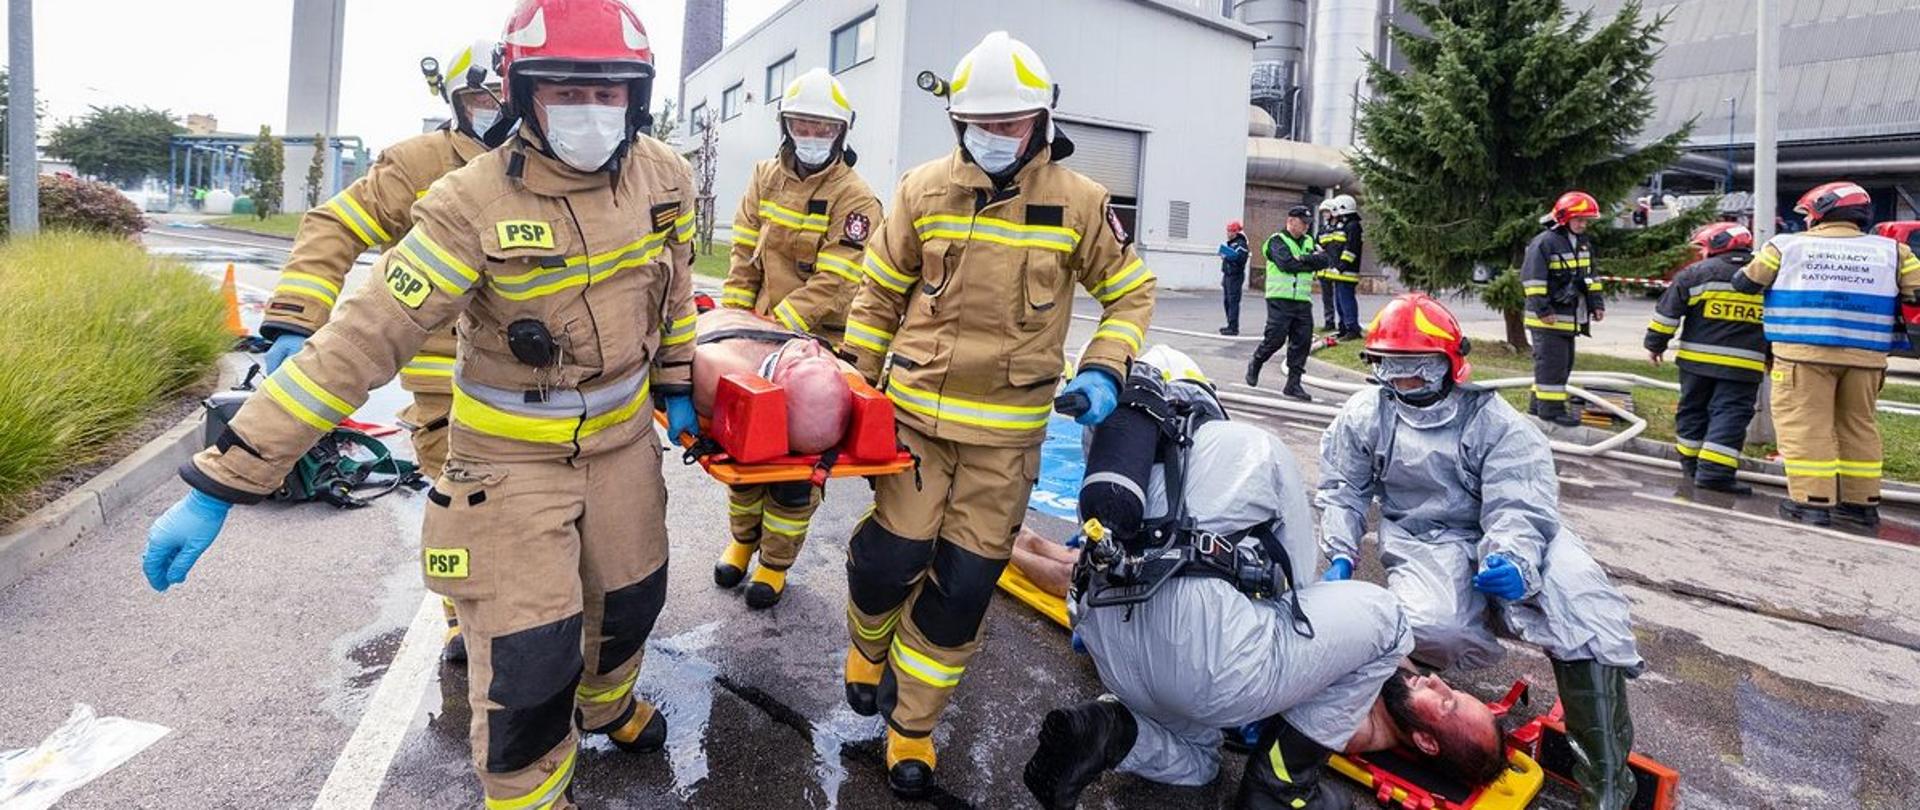 Na zdjęciu widzimy strażaków ubranych w umundurowanie specjalne, którzy niosą na noszach osobę poszkodowaną, a także dwóch strażaków z specjalistycznej grupy ratownictwa chemicznego, którzy udzielają pomocy innej osobie poszkodowanej. W tle widoczni są inni strażacy, a także obiekty huty szkła.